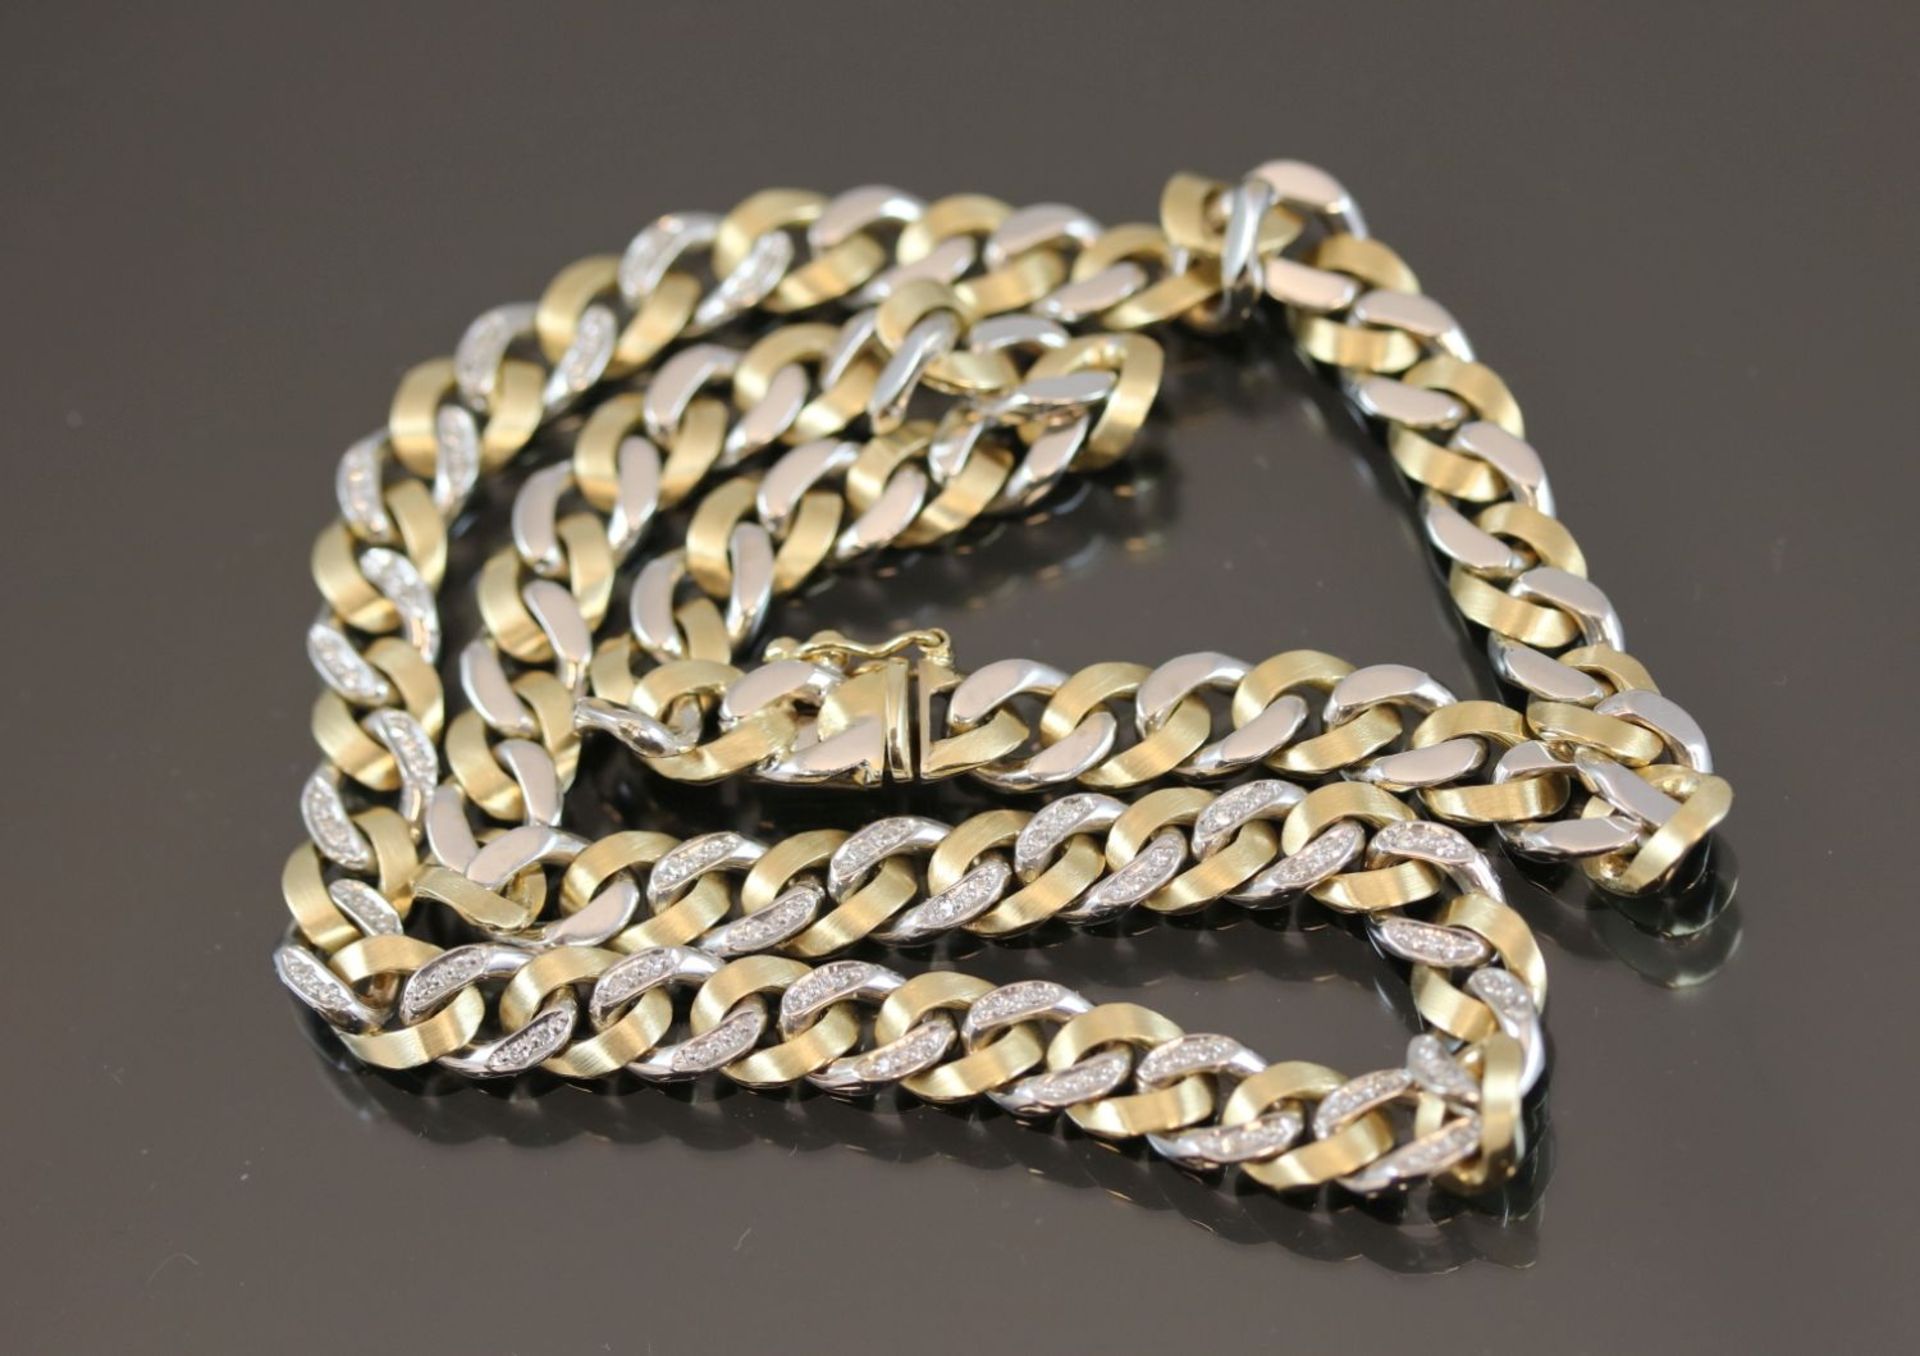 Diamant-Halskette, 585 Gold47,7 Gramm 72 Diamanten, 0,35 ct., w/si. Länge: 42 cm Schätzpreis: 4000,- - Image 2 of 4